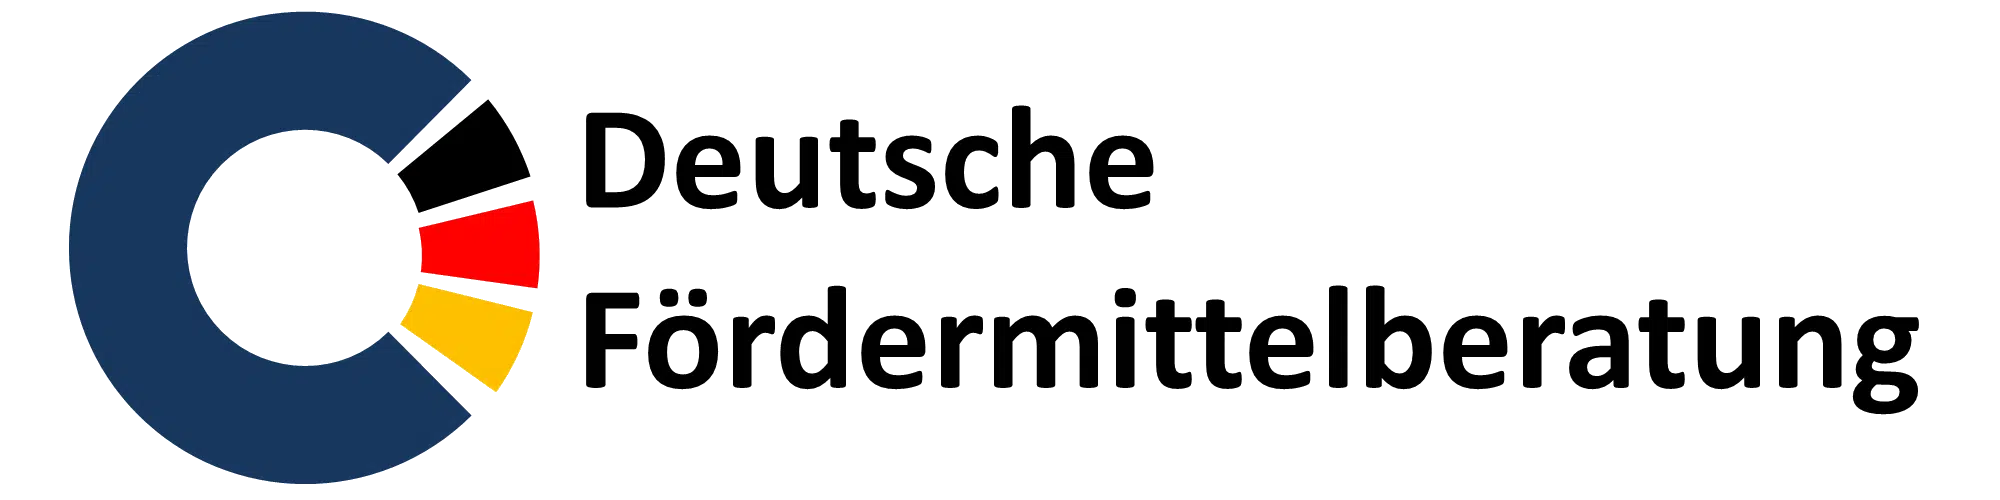 Logo Deutsche Fördermittelberatung